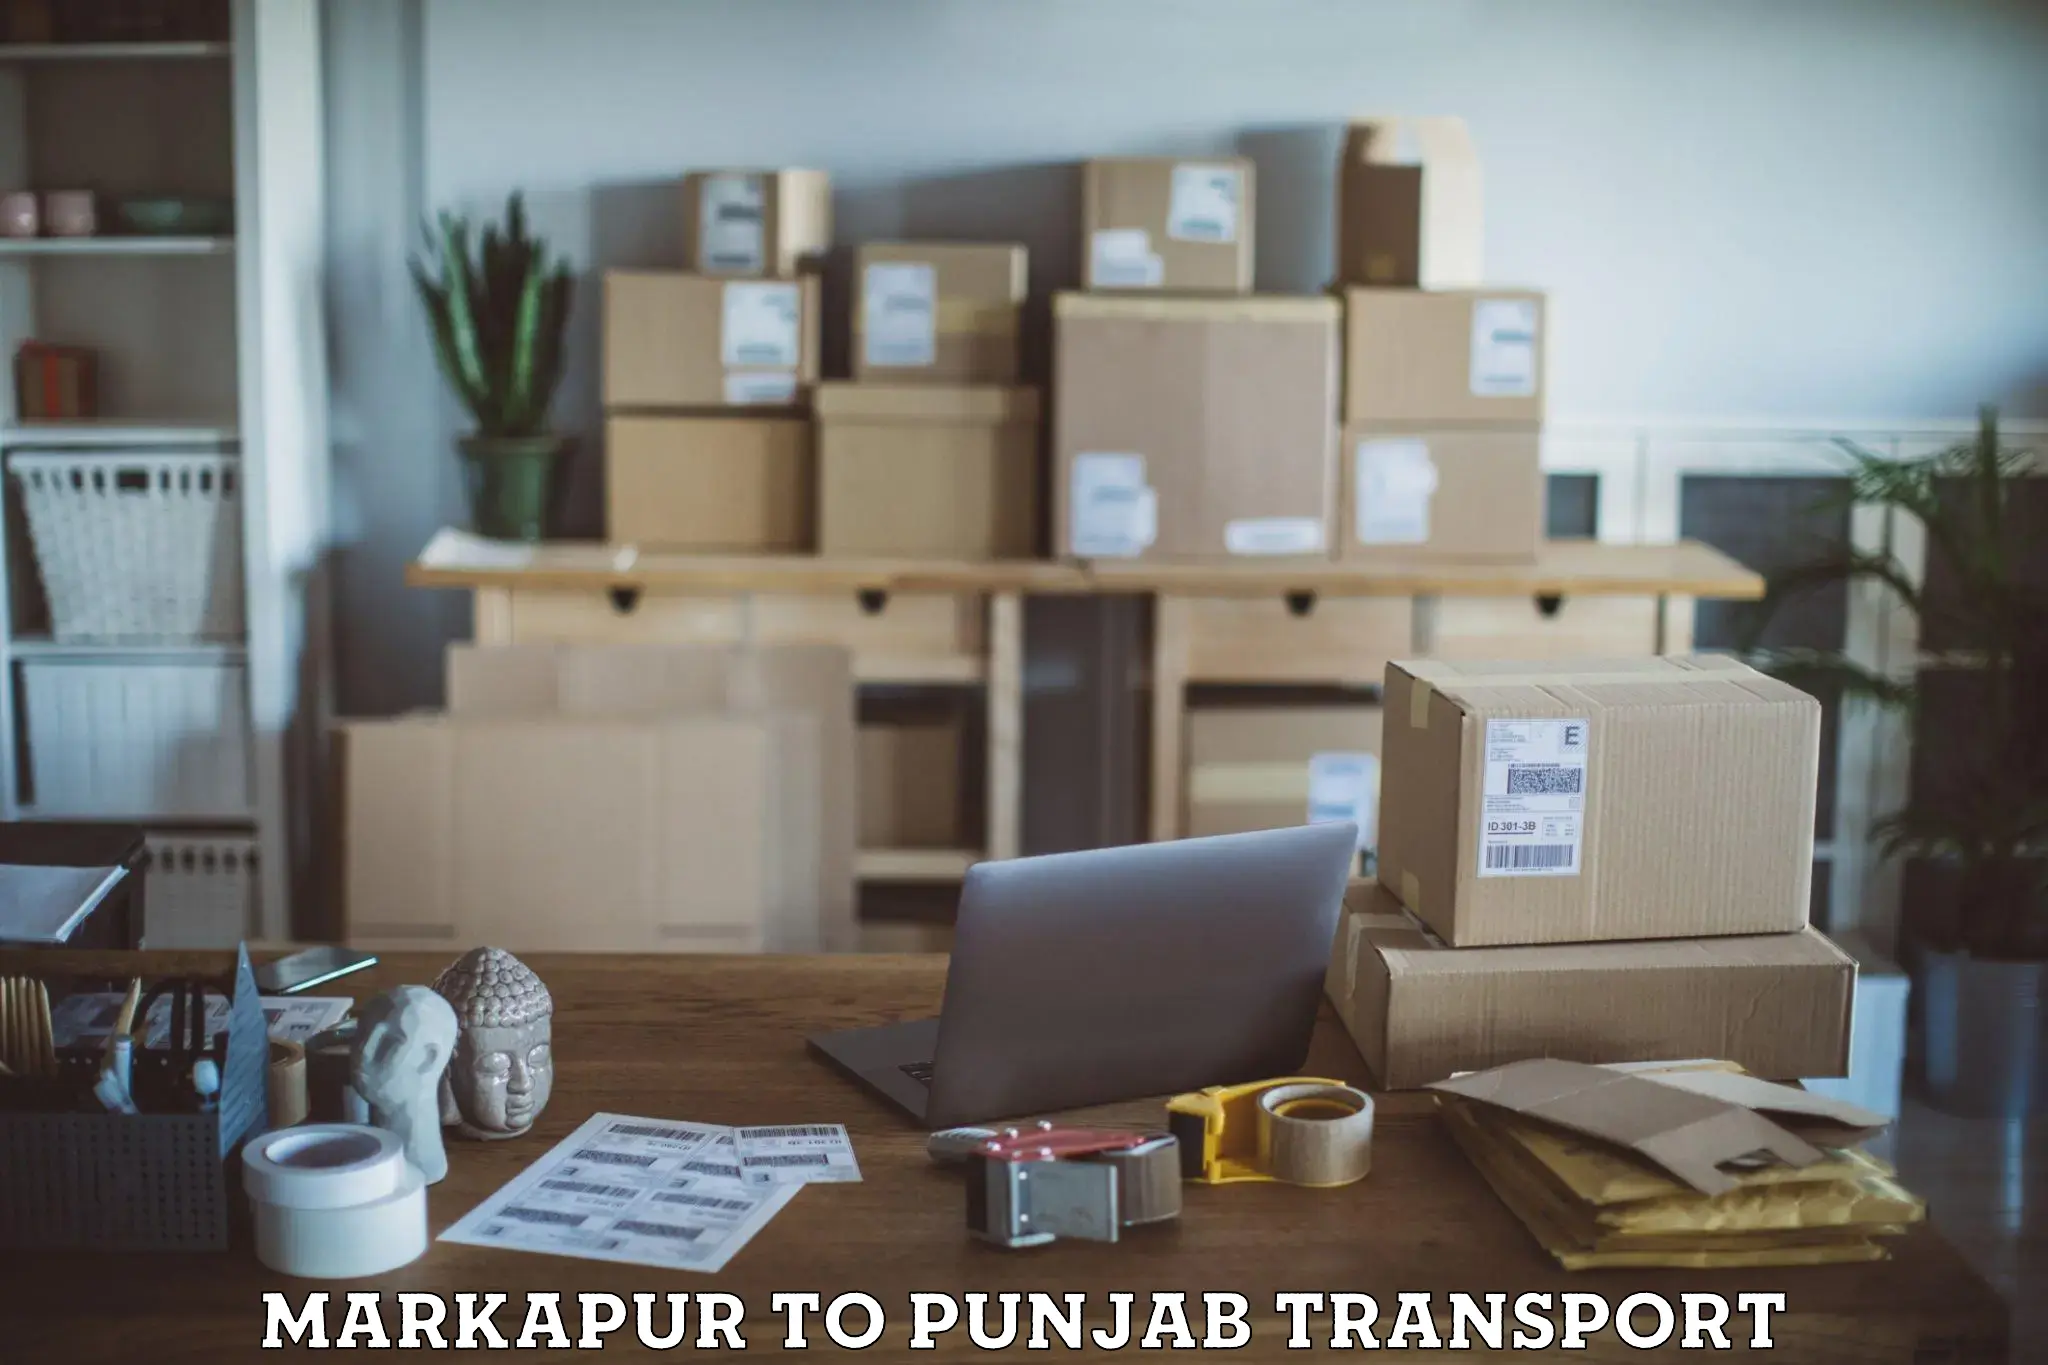 Pick up transport service Markapur to Goindwal Sahib